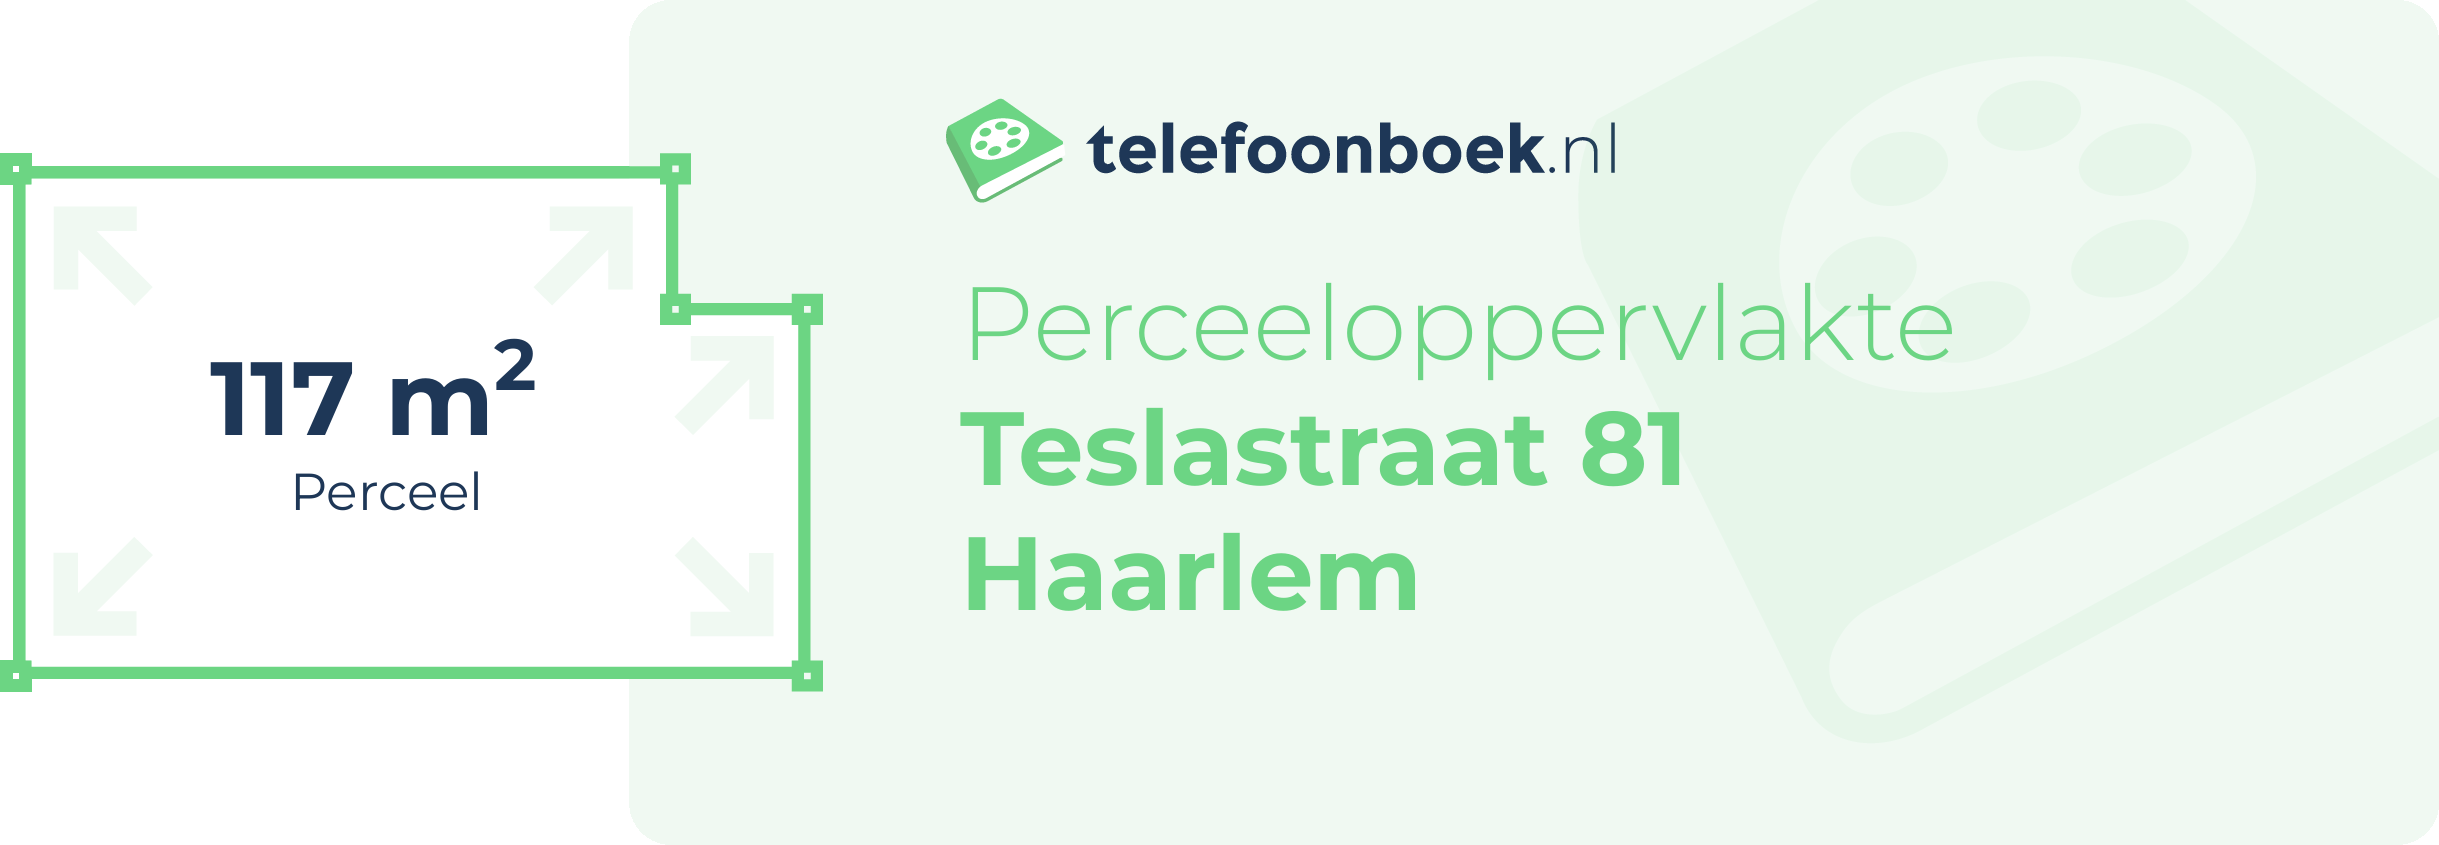 Perceeloppervlakte Teslastraat 81 Haarlem